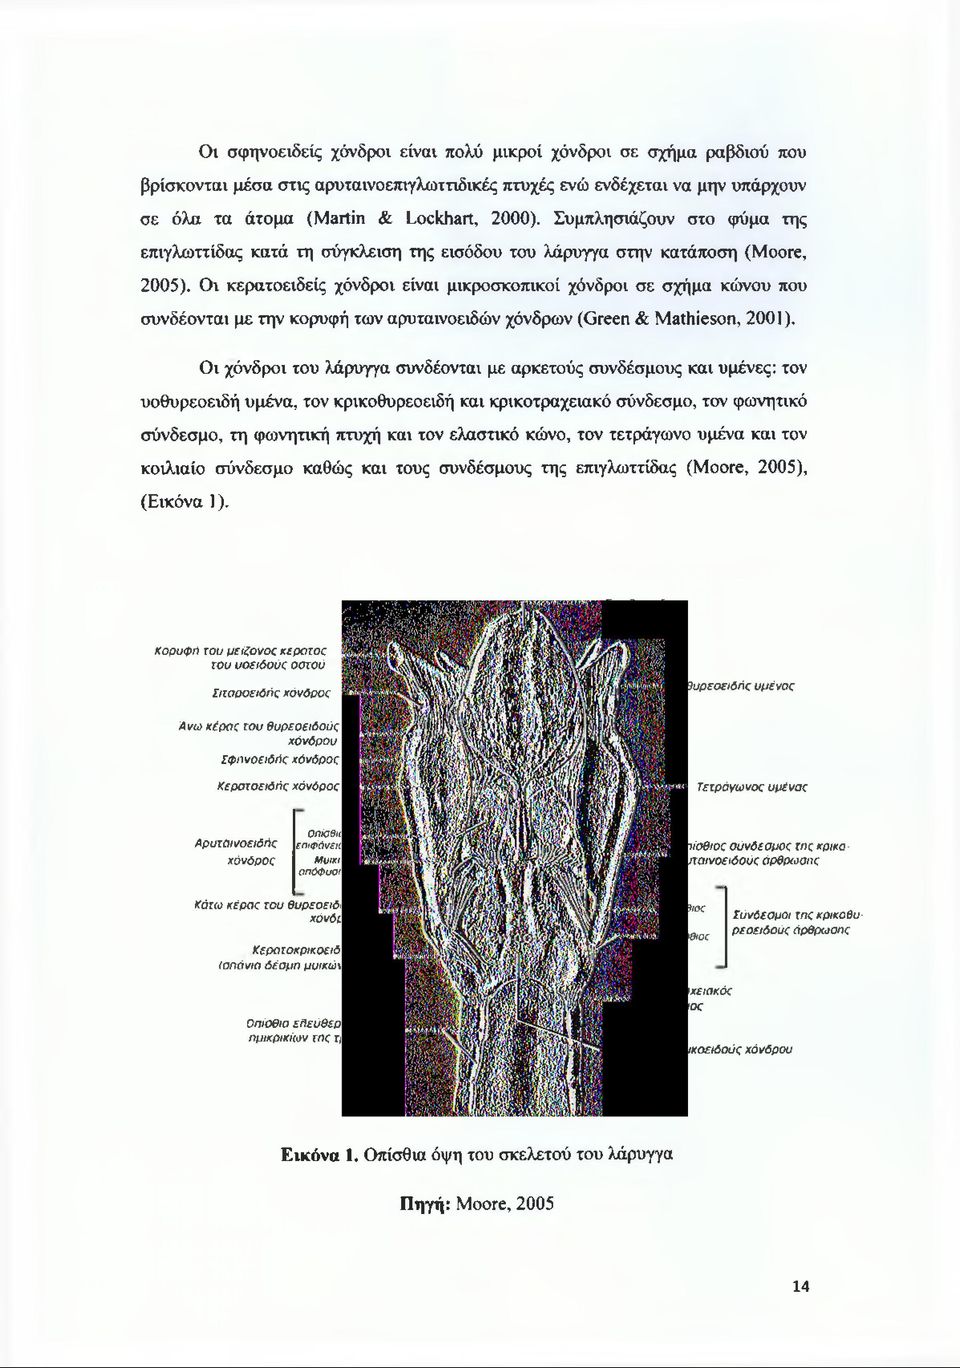 Οι κερατοειδείς χόνδροι είναι μικροσκοπικοί χόνδροι σε σχήμα κώνου που συνδέονται με την κορυφή των αρυταινοειδών χόνδρων (Green & Mathieson, 2001).